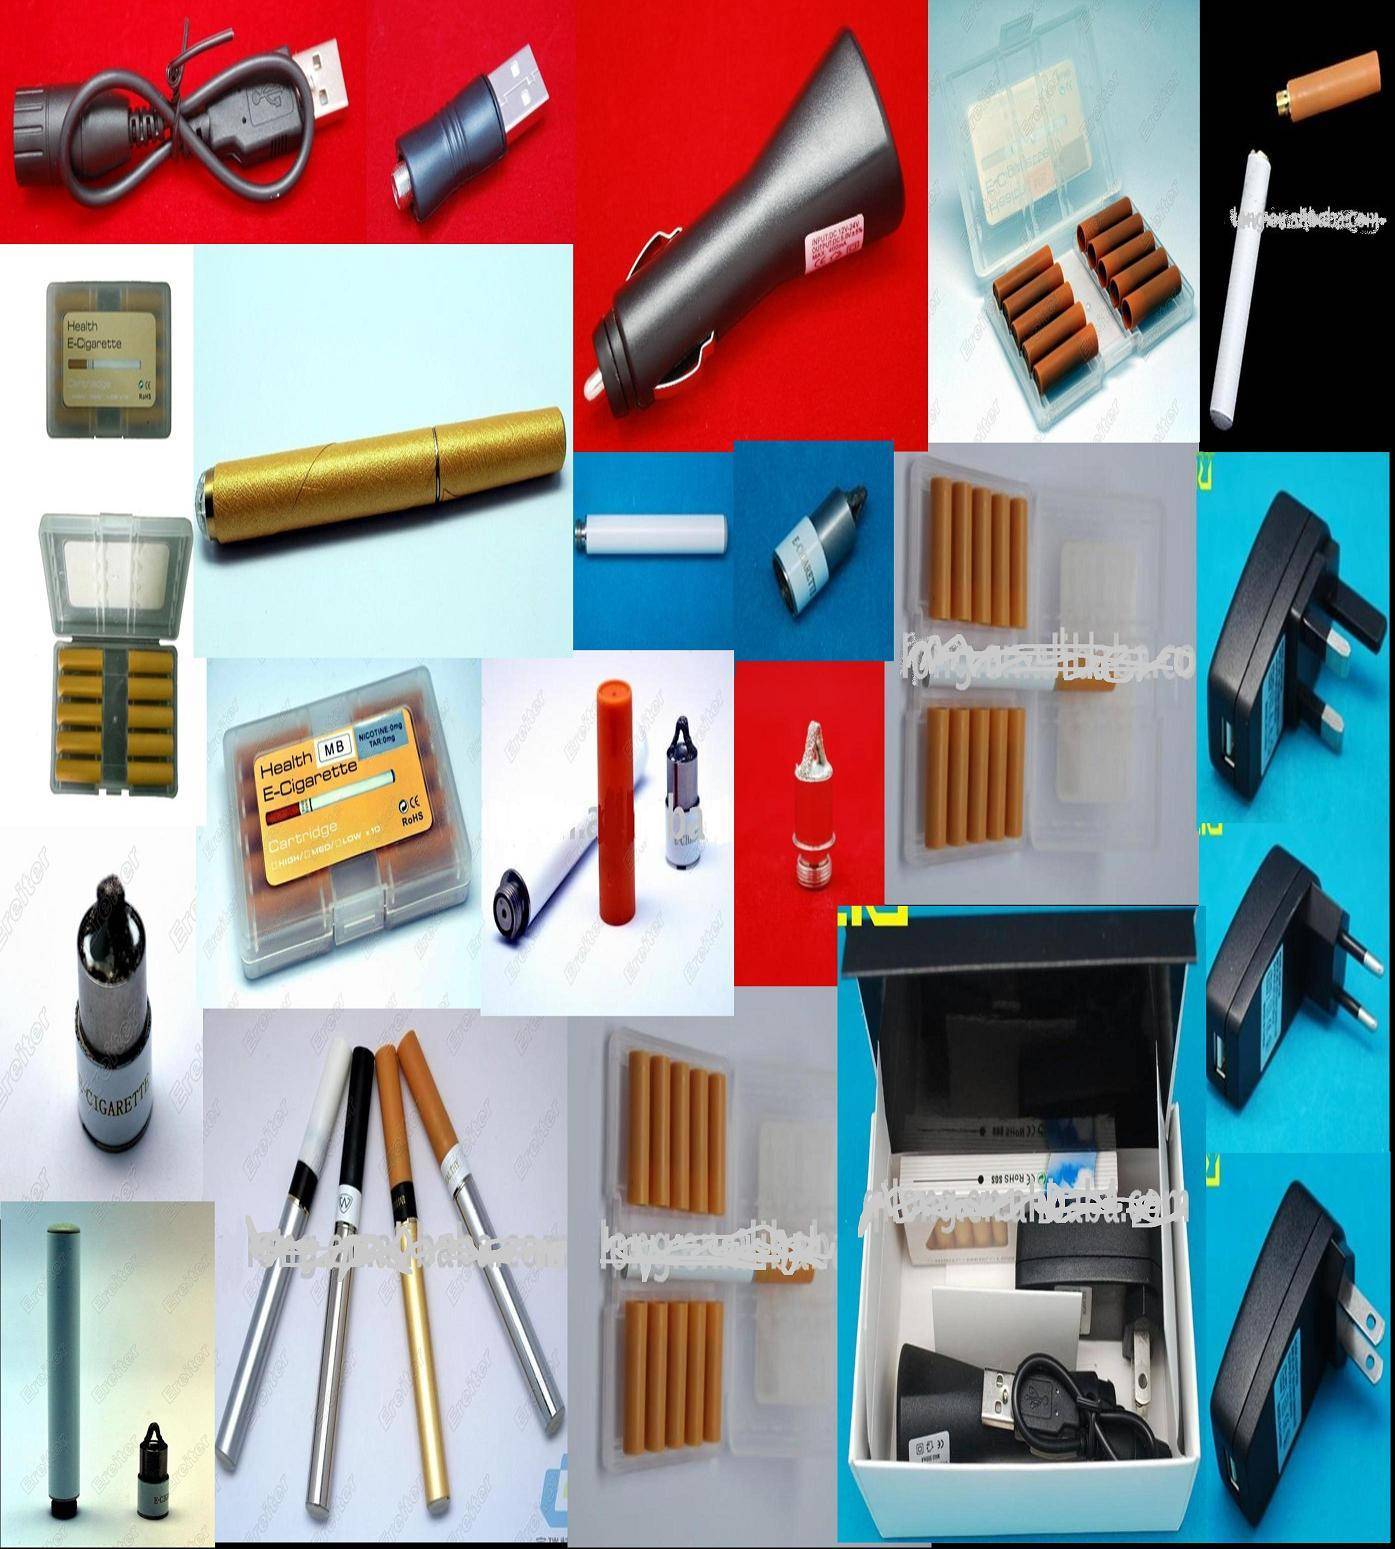 monarki Kilde Ministerium E-cigarette Accessories, Spray Devices, Smoke Oil, Chargers, - DaYunTong  Logistics Co., Ltd.